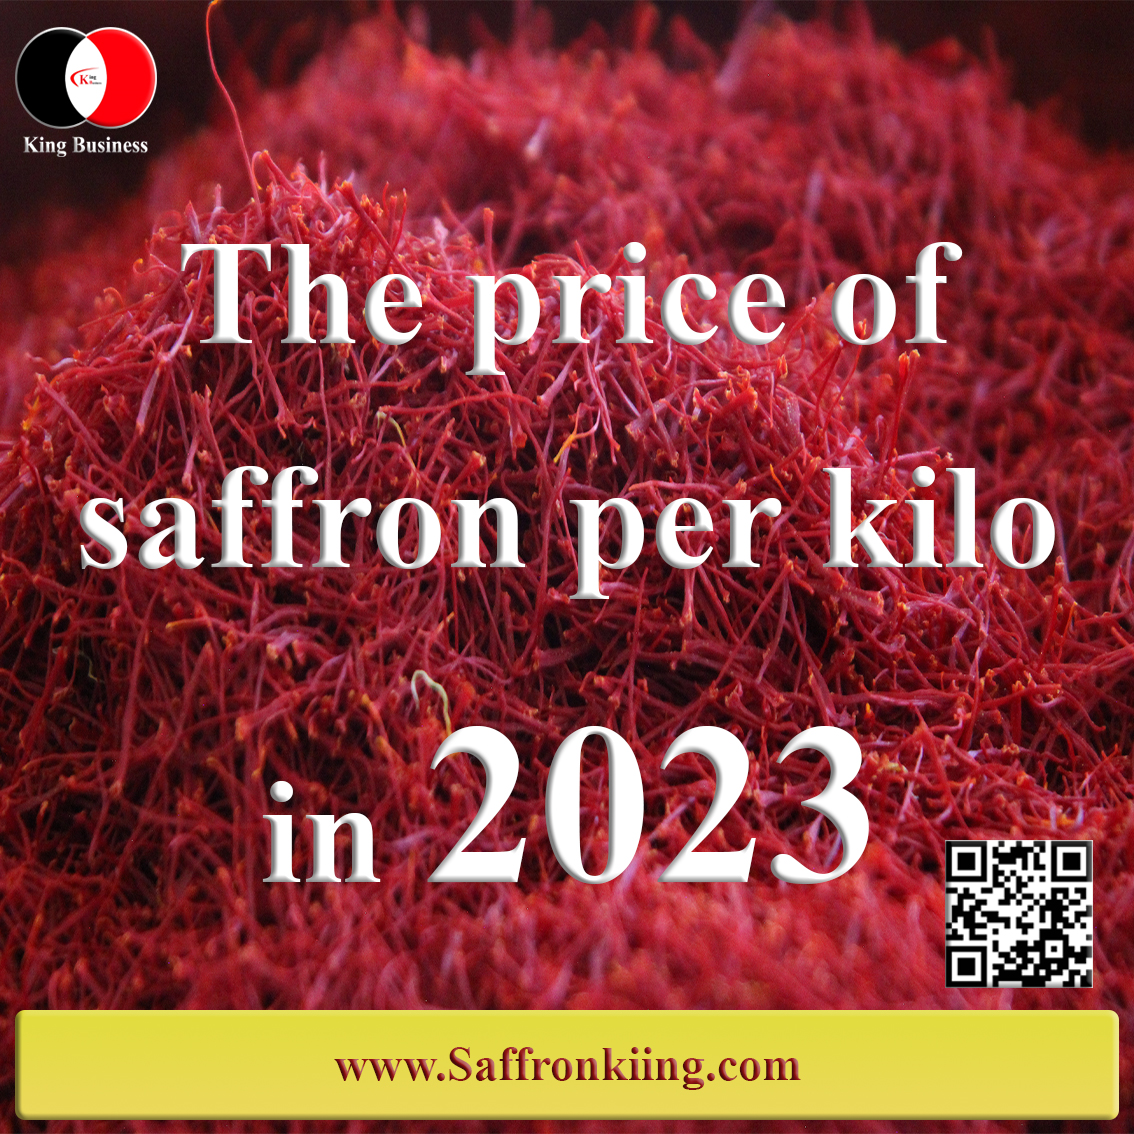 The price of saffron per kilo in 2023